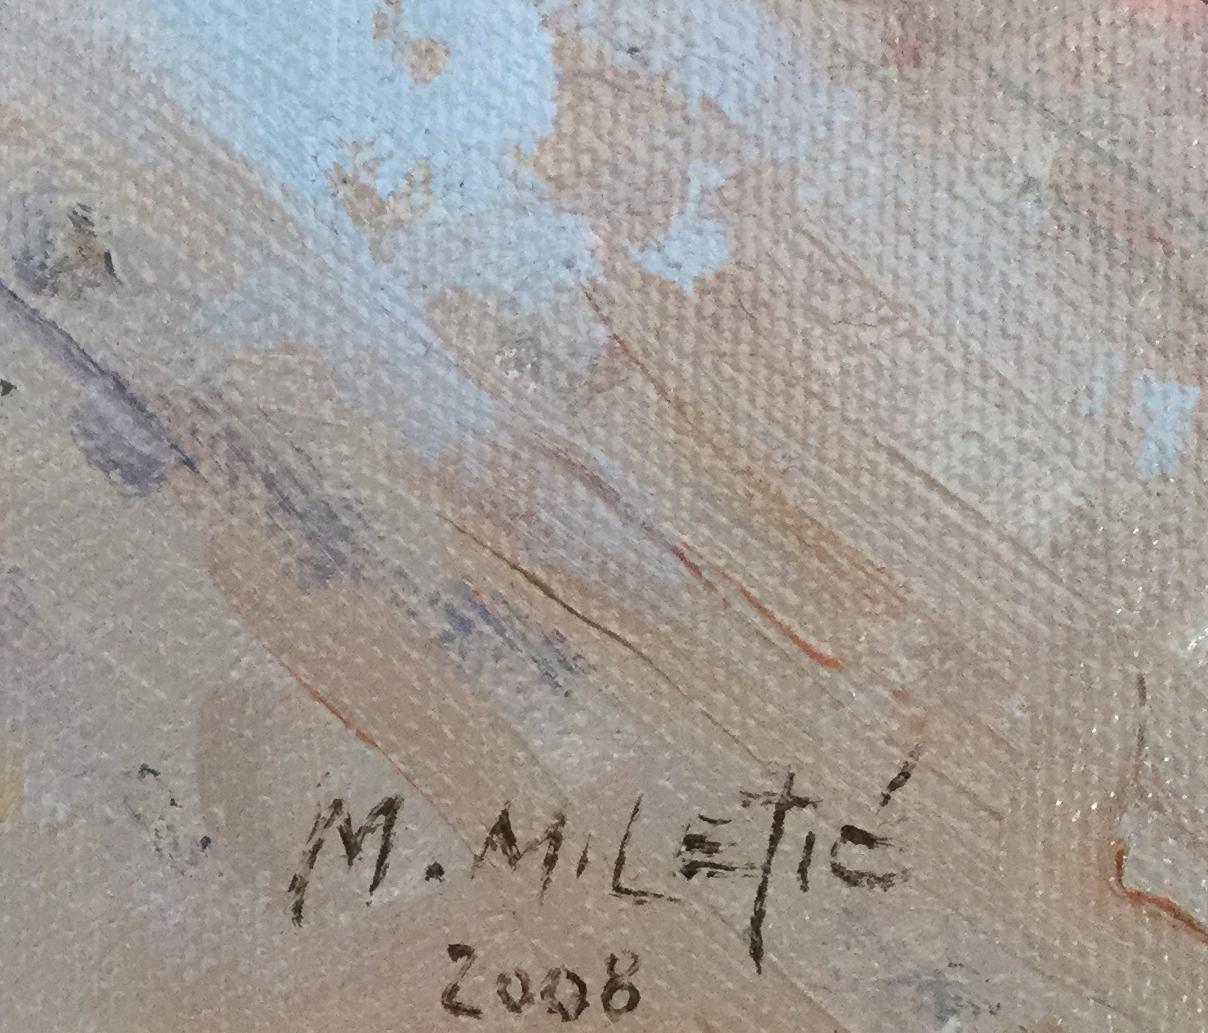 Milan Milet, artiste serbe, né en 1950.

Pont Neuf, Paris huile sur toile, signée en bas à droite et datée 2008. Dans un cadre doré décoratif.

L'artiste Milan Milet, né en Yougoslavie, a obtenu sa maîtrise en art à l'Académie des beaux-arts de